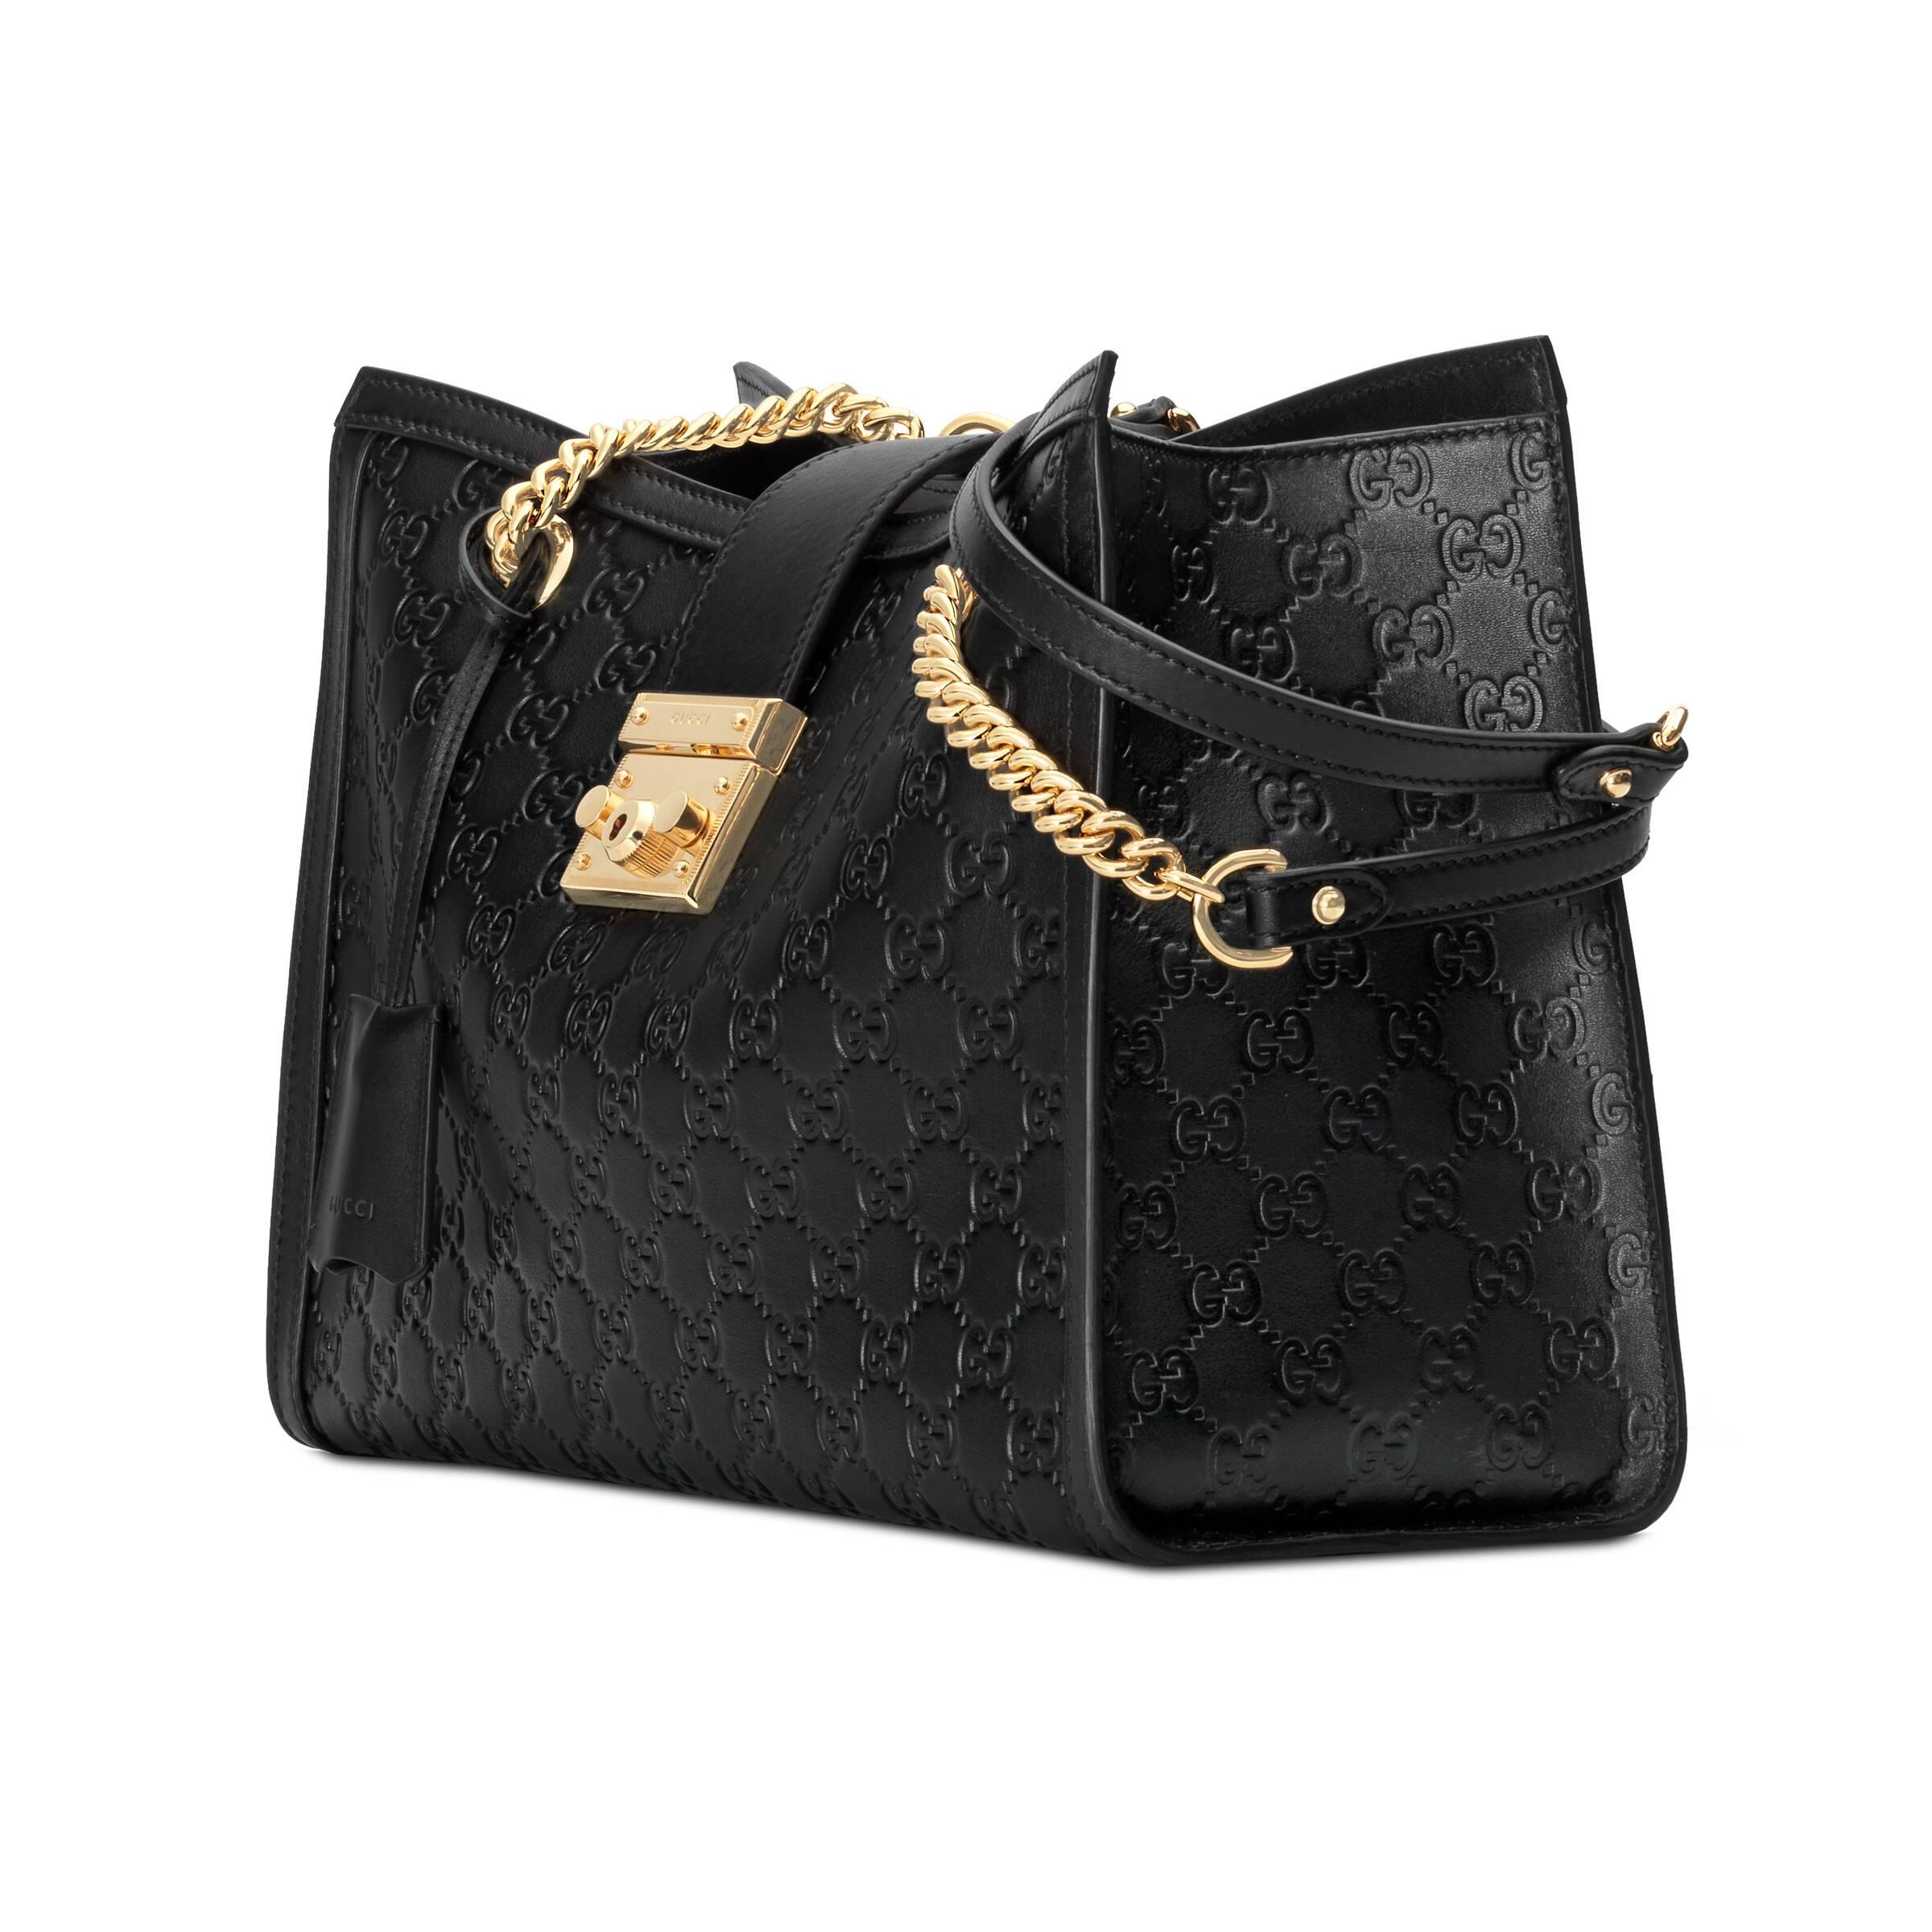 Gucci Black Guccissima Leather Medium Padlock Shoulder Bag Gucci